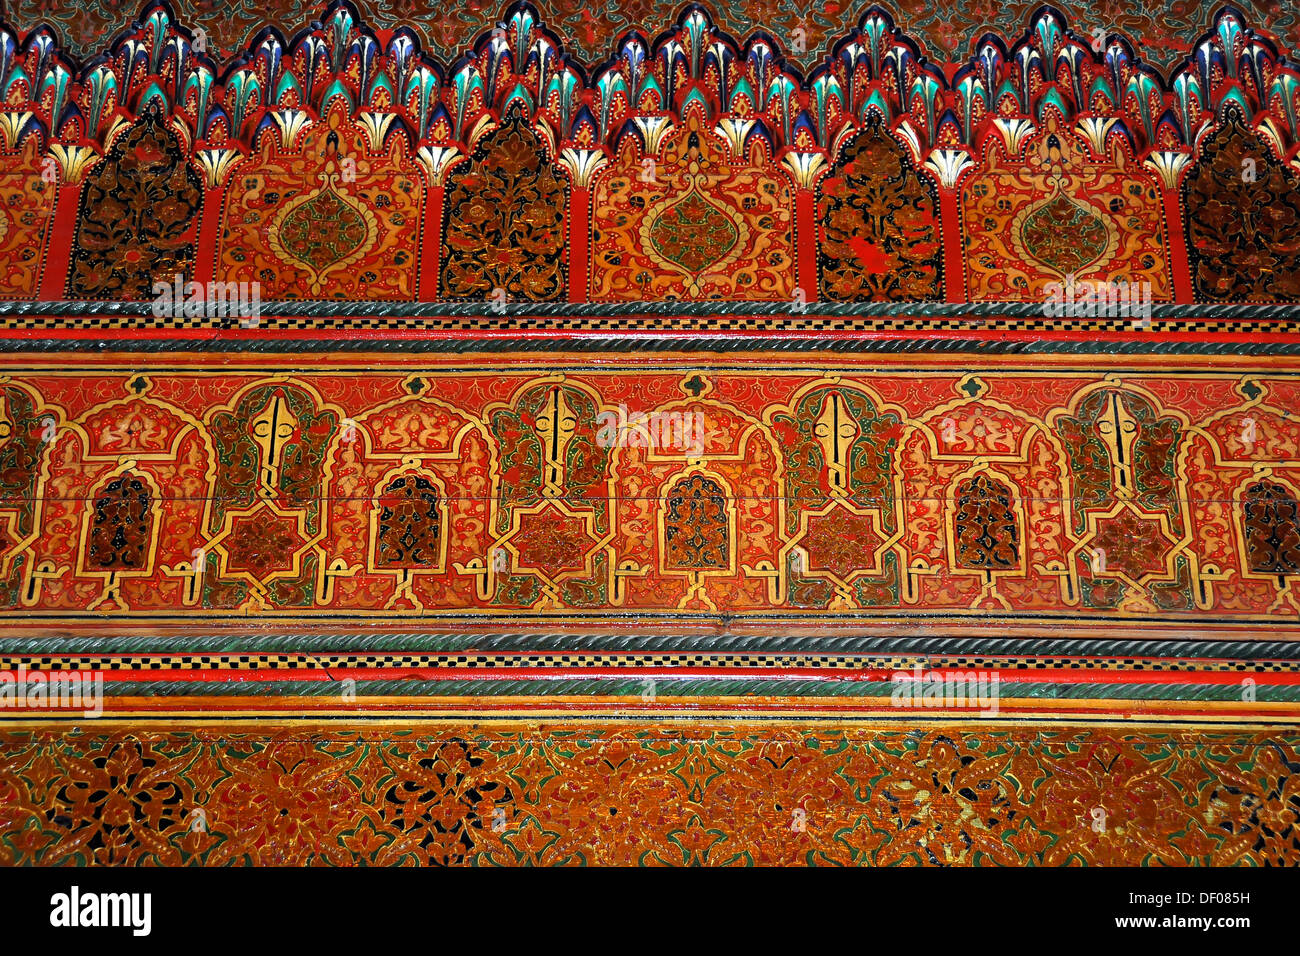 Mur décoré, peint des ornements sur flowstone, Palais de la Bahia, Marrakech, Maroc, Afrique Banque D'Images